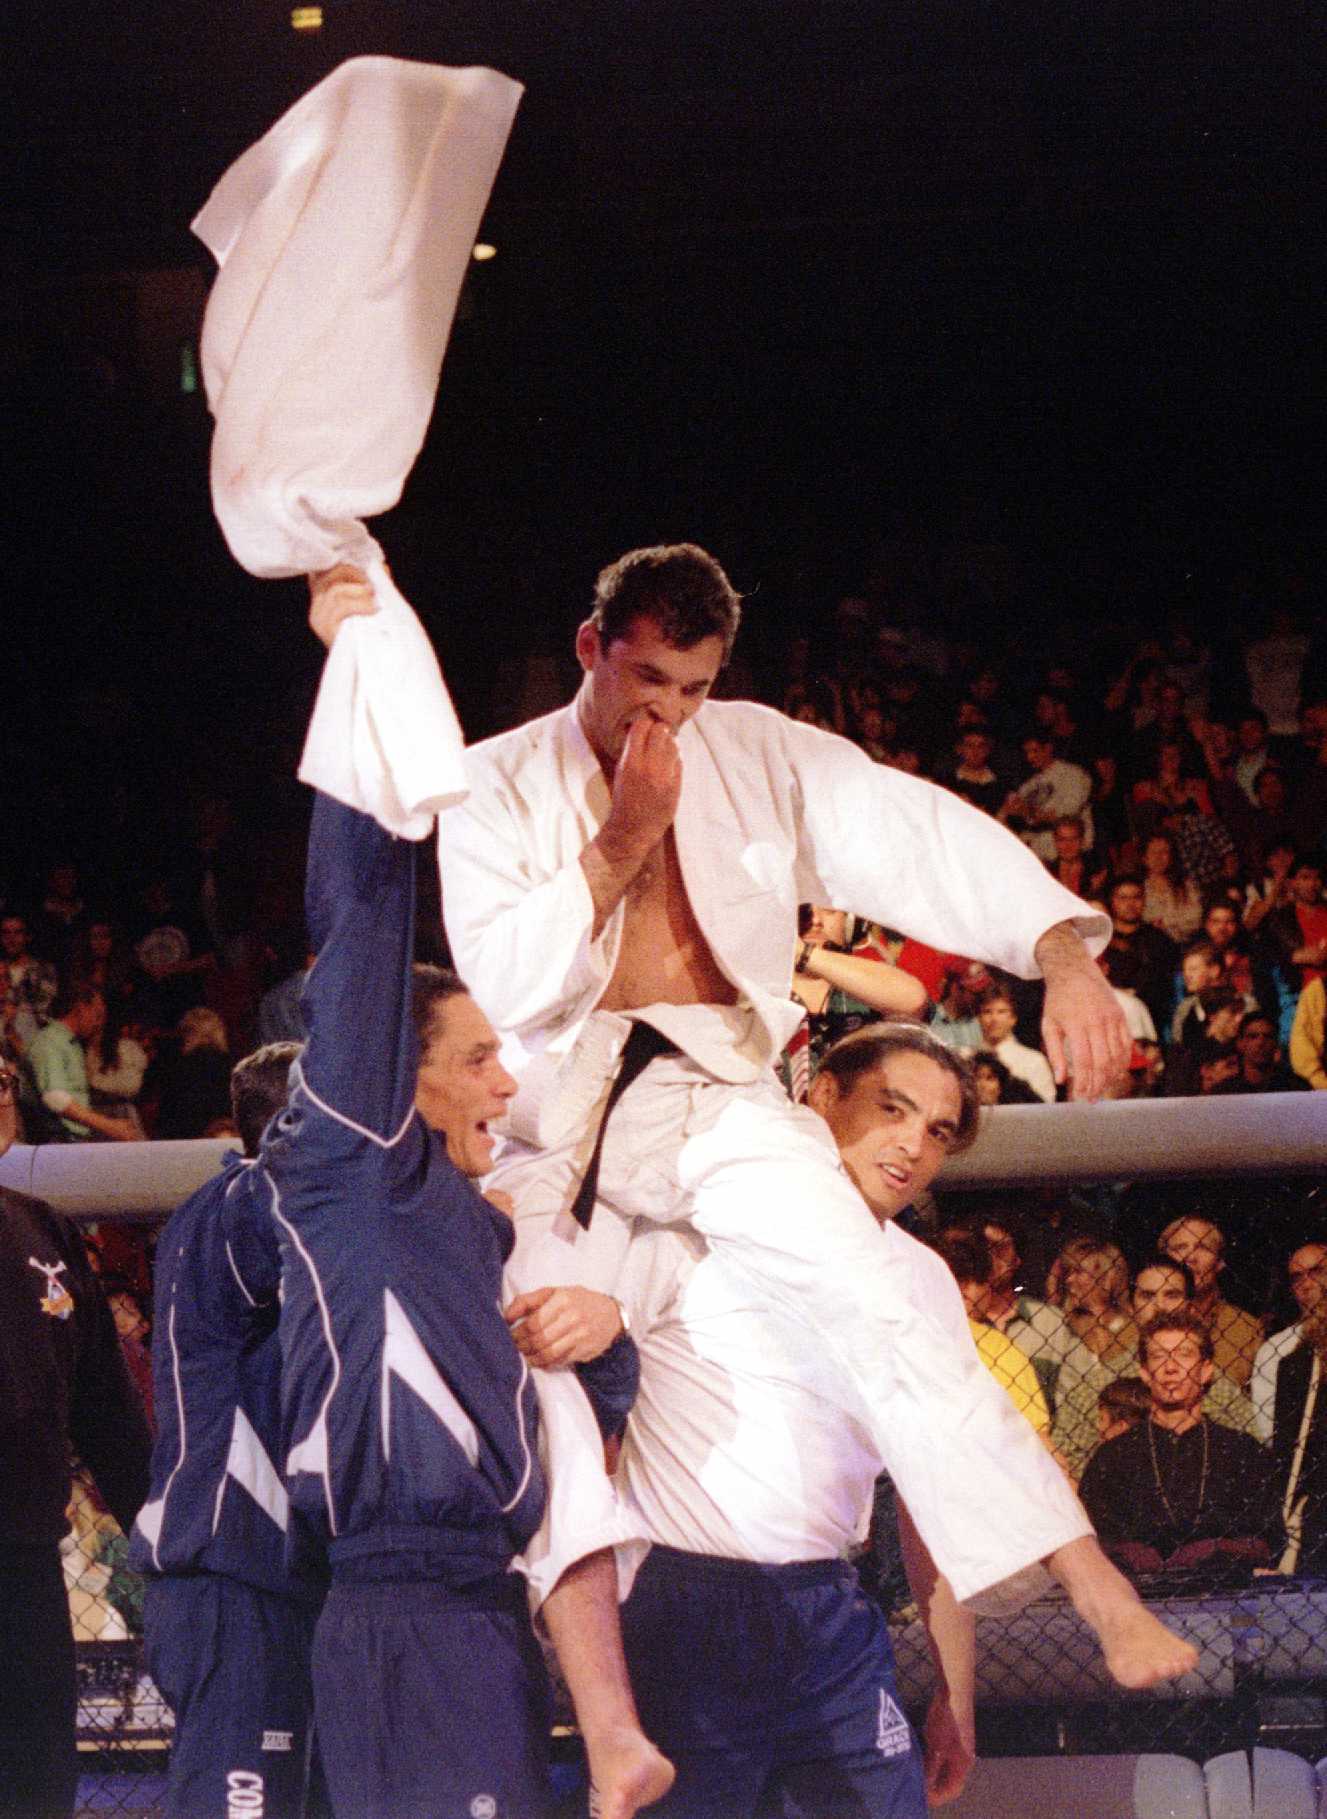 Der brasilianische Jiu-Jitsu-Star Royce Gracie gewann das Turnier mit zwei schnellen Submissions